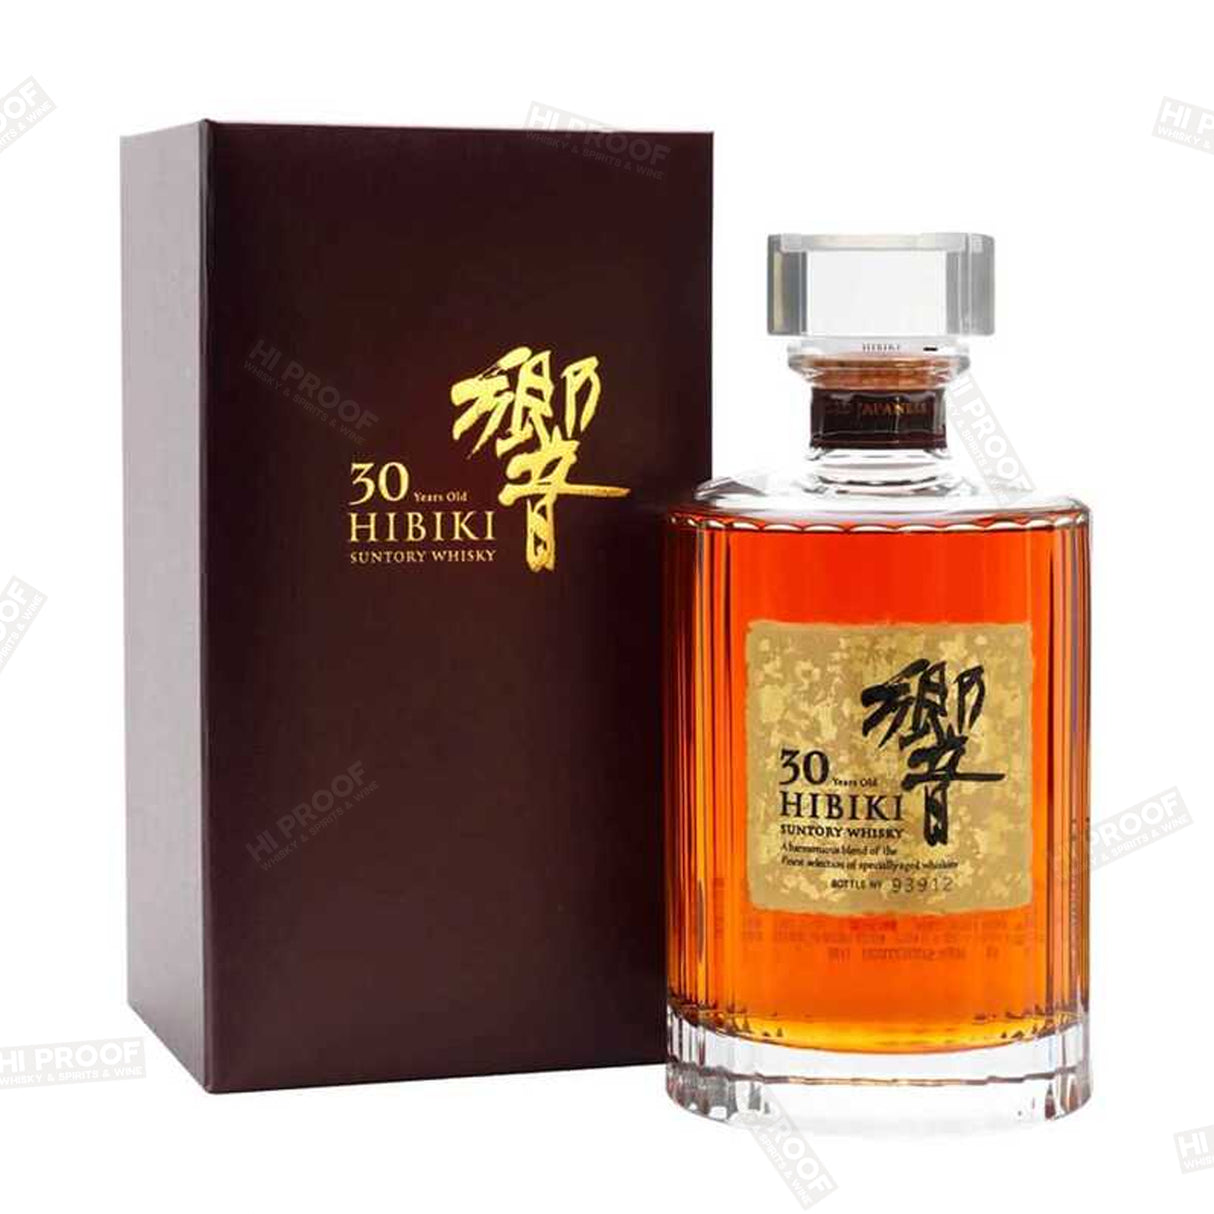 Hibiki 30 Year Old Blended Whisky